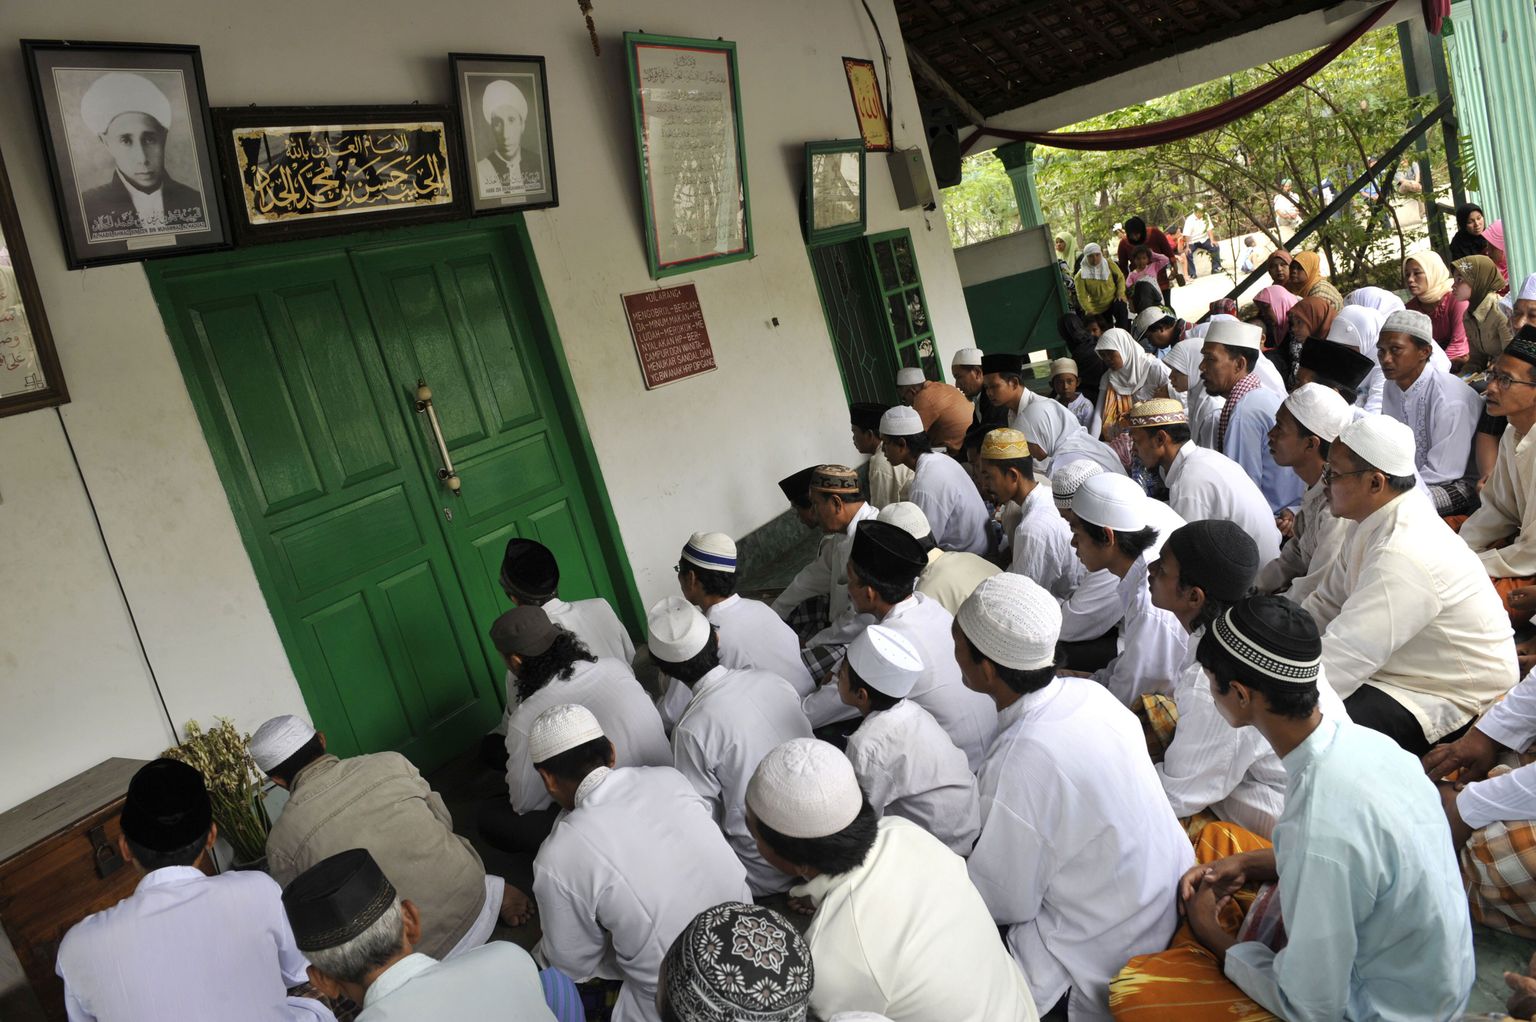 Indoneesia moslemid palvetamas